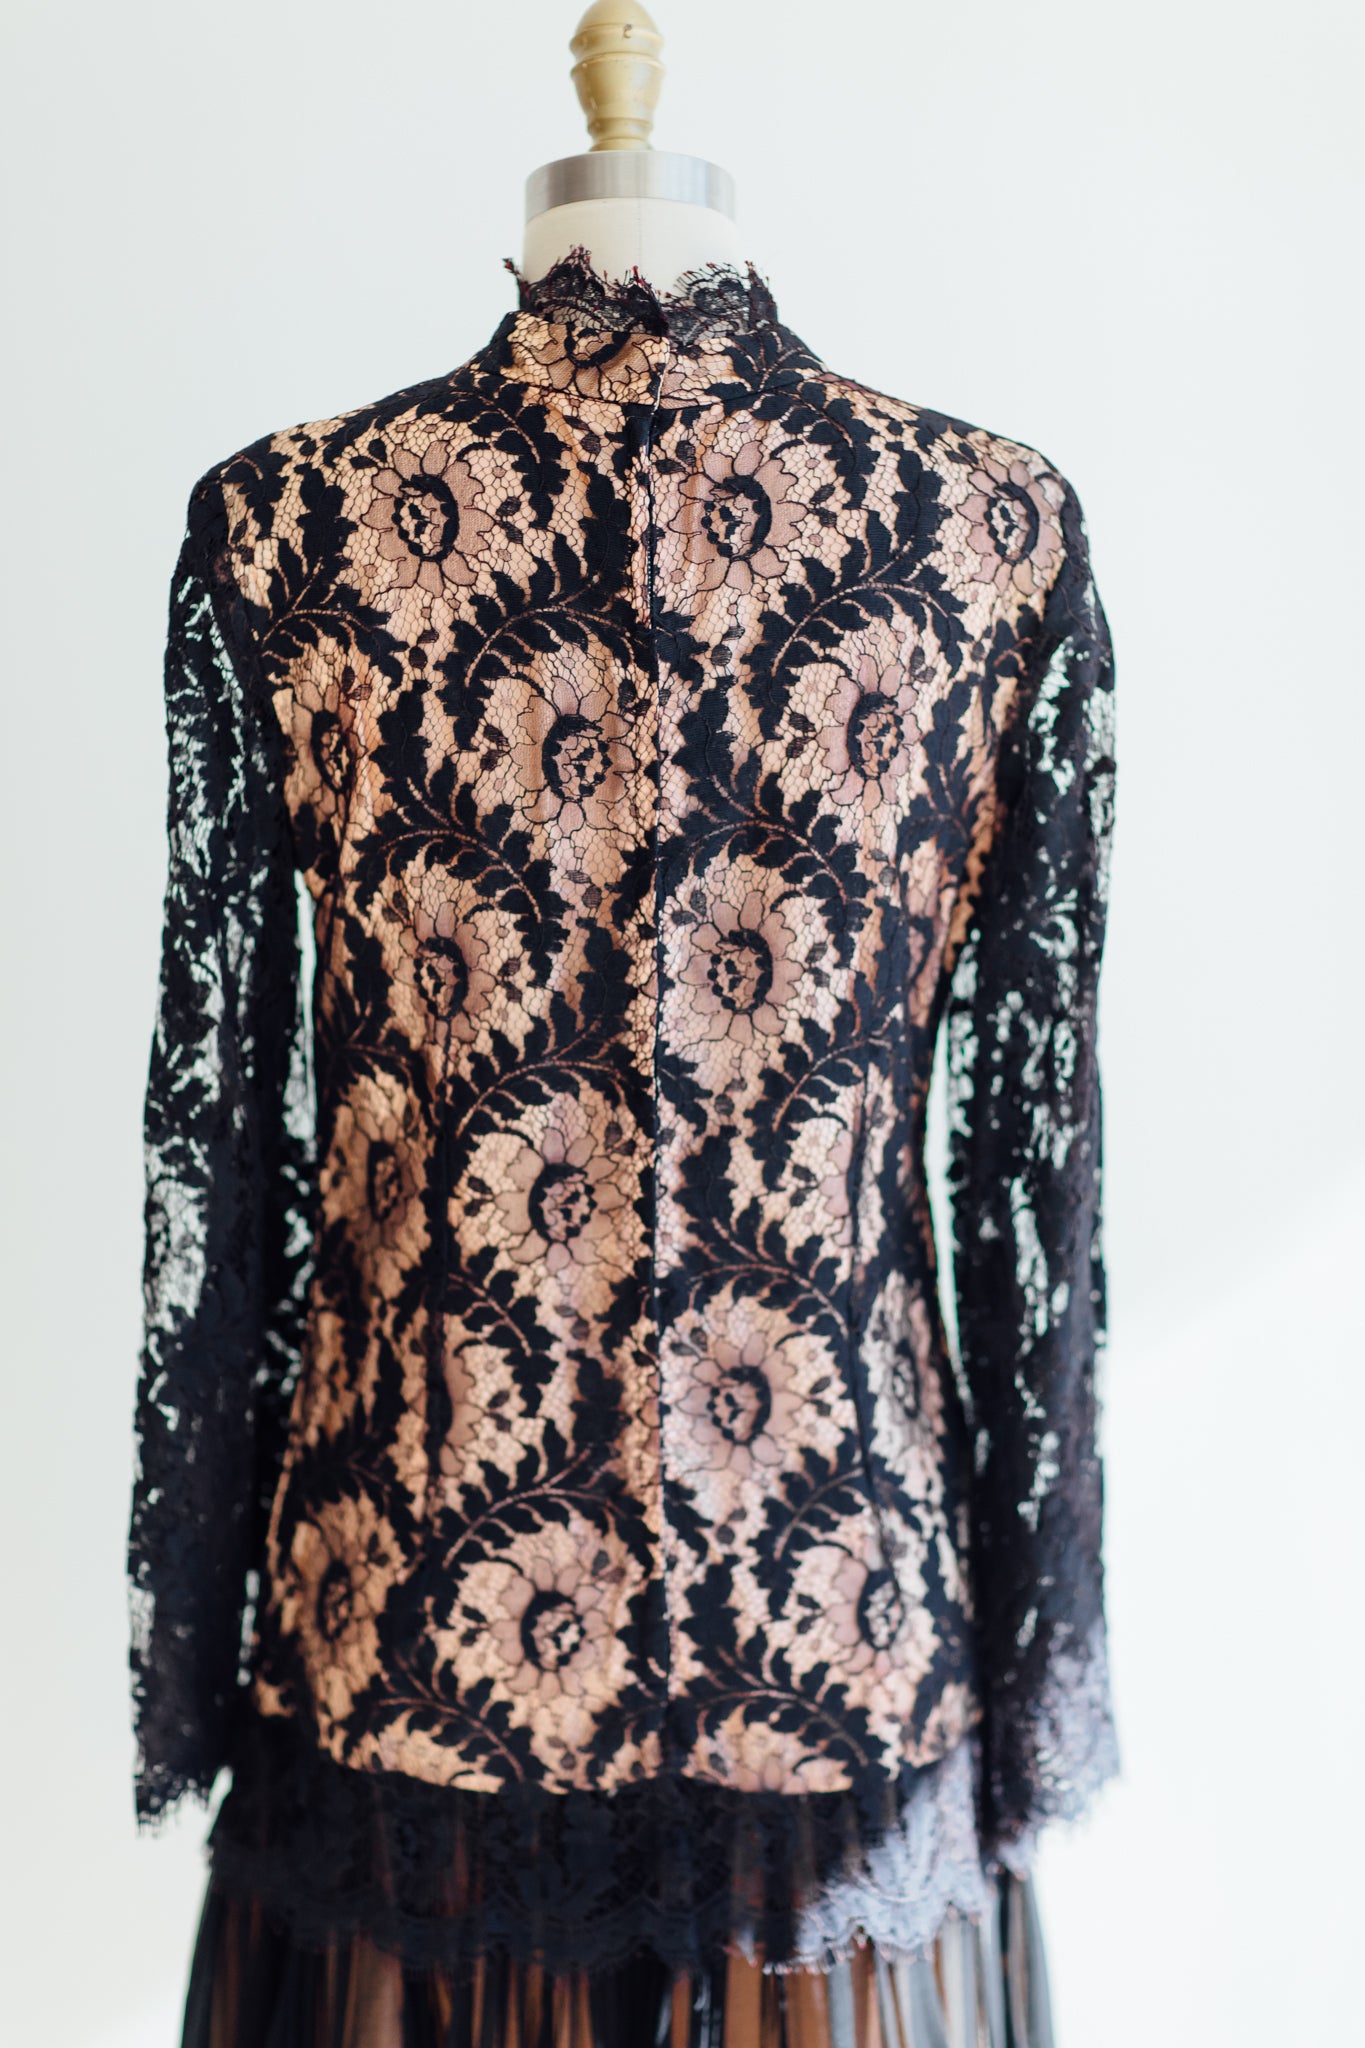 Mitzy Black Lace Drop-Waist Party Dress